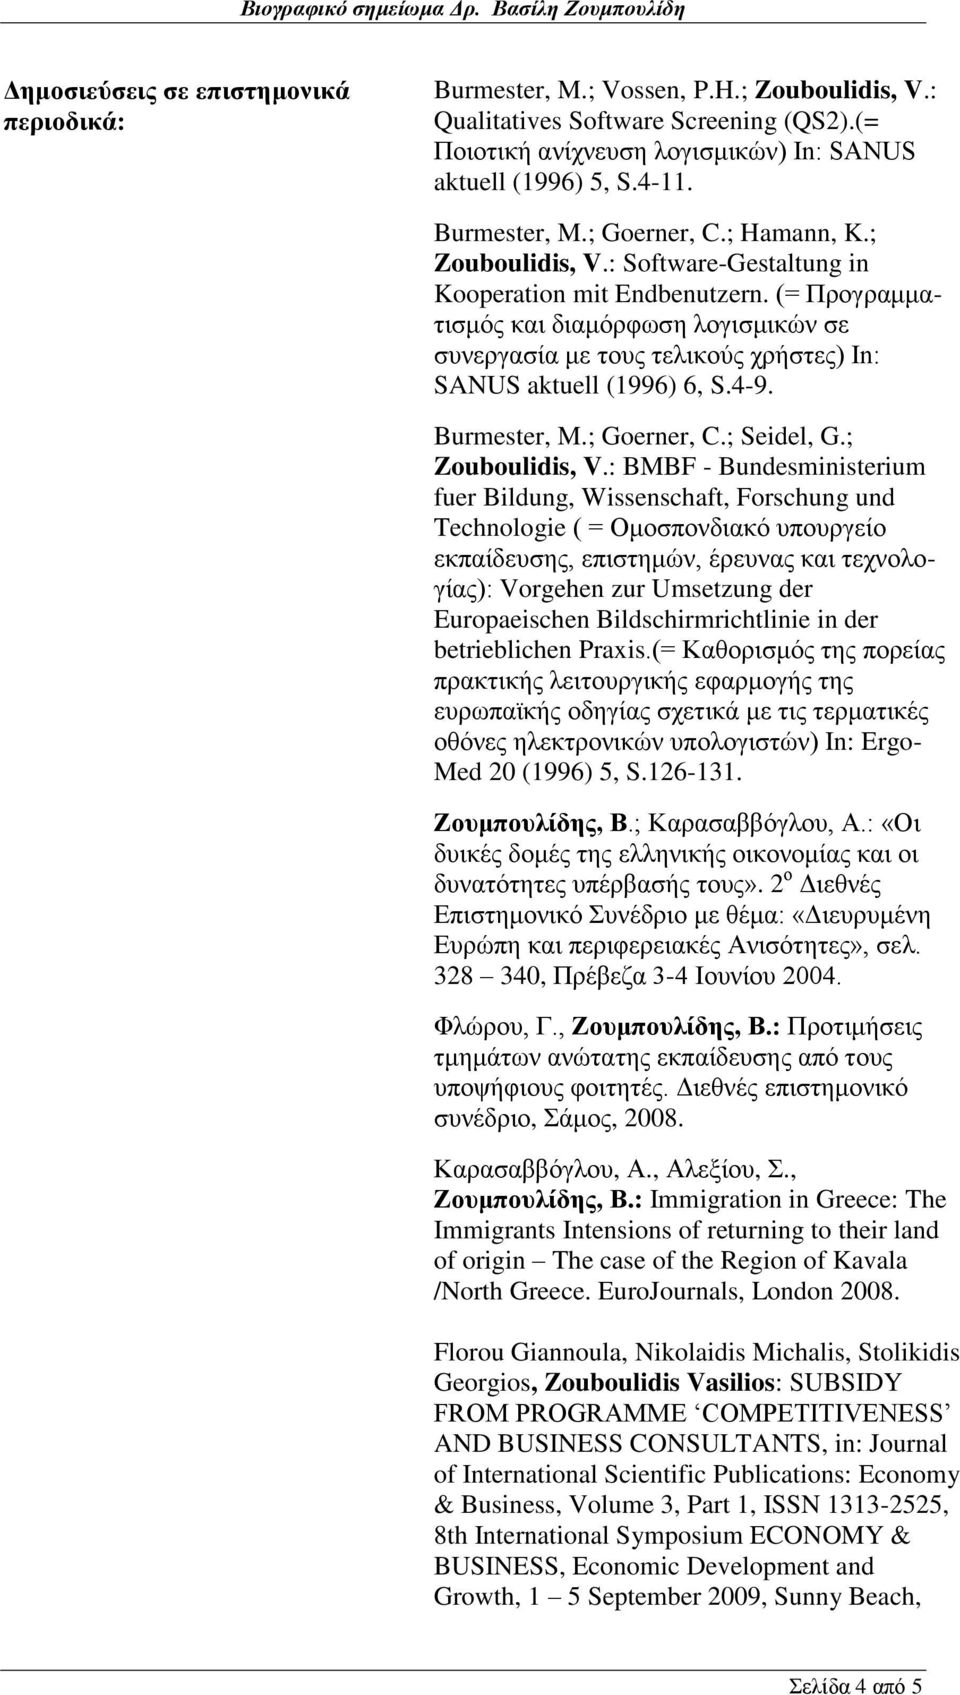 (= Προγραμματισμός και διαμόρφωση λογισμικών σε συνεργασία με τους τελικούς χρήστες) In: SANUS aktuell (1996) 6, S.4-9. Burmester, M.; Goerner, C.; Seidel, G.; Zouboulidis, V.